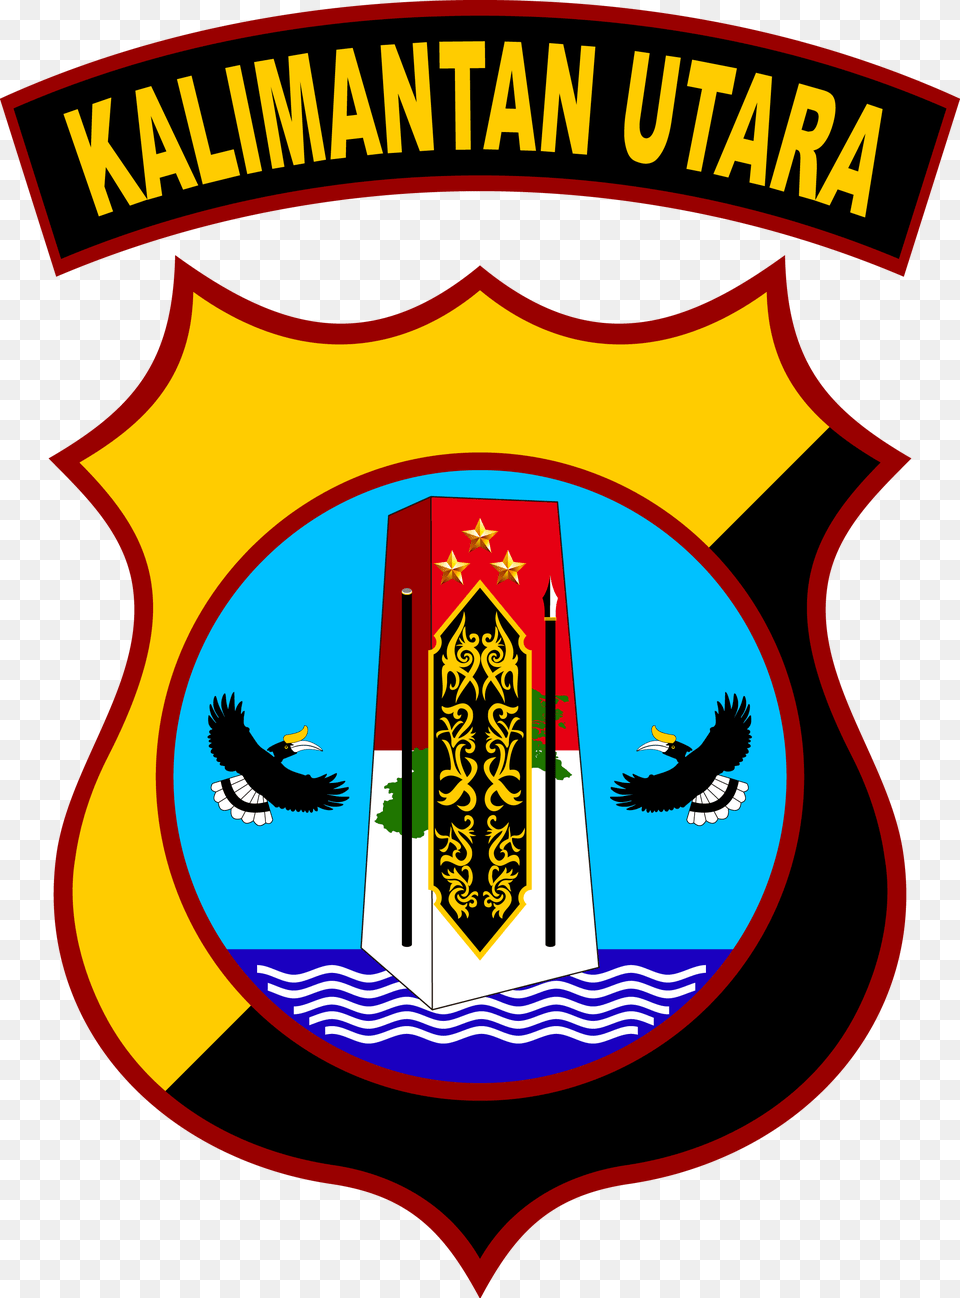 Lambang Polda Kaltara Logo Lambang Polda Kalimantan Utara, Emblem, Symbol, Animal, Bird Free Png Download